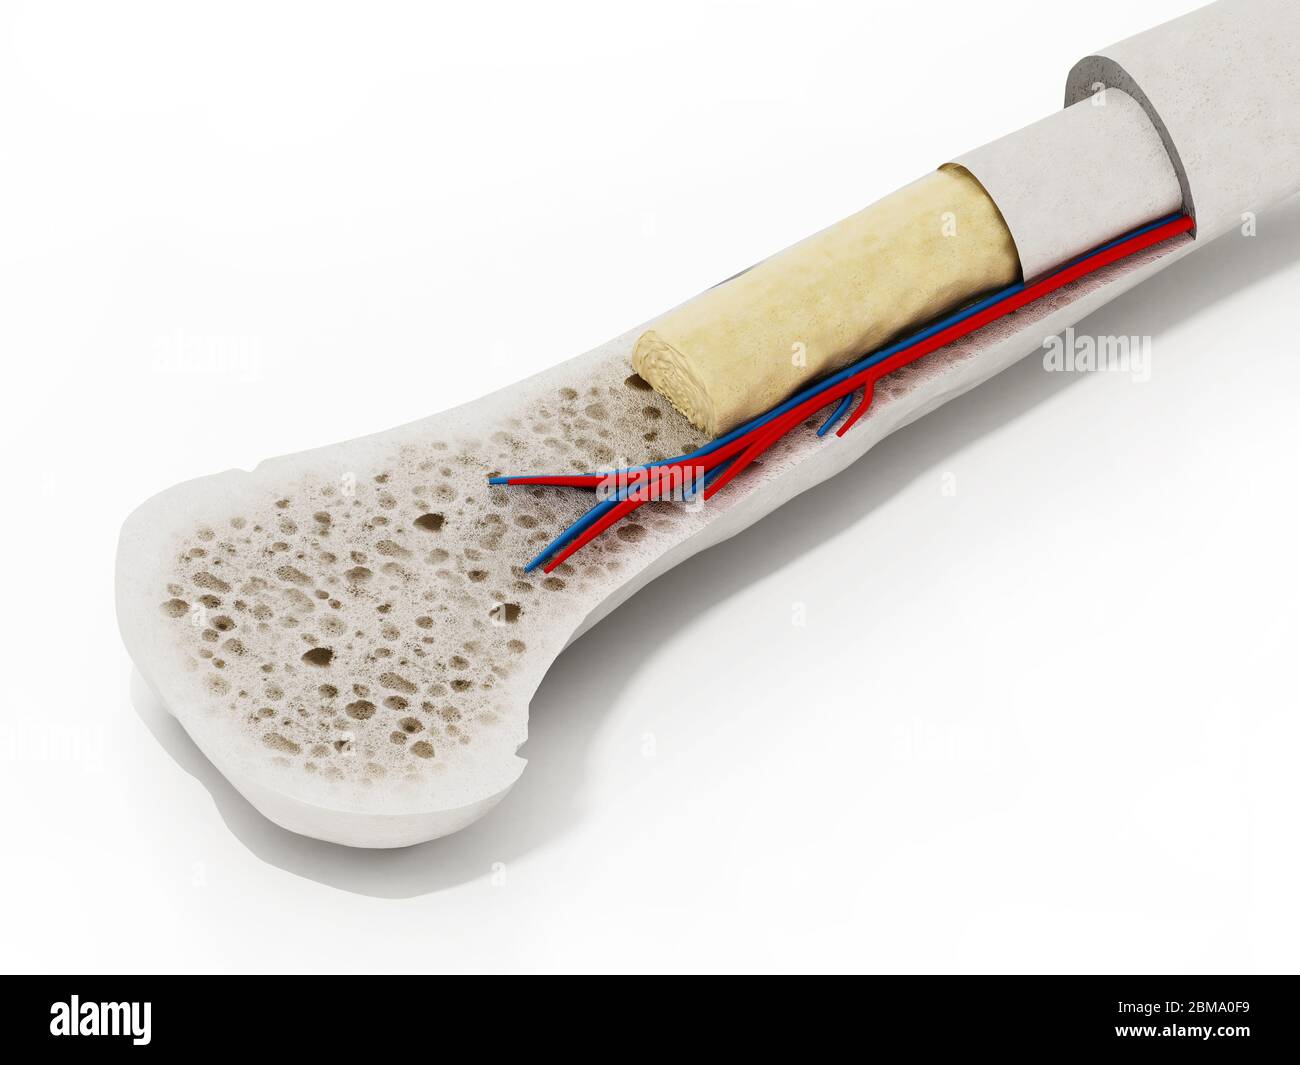 Sezione trasversale di un osso umano che mostra midollo osseo, osso spugnoso e vasi sanguigni. Illustrazione 3D. Foto Stock